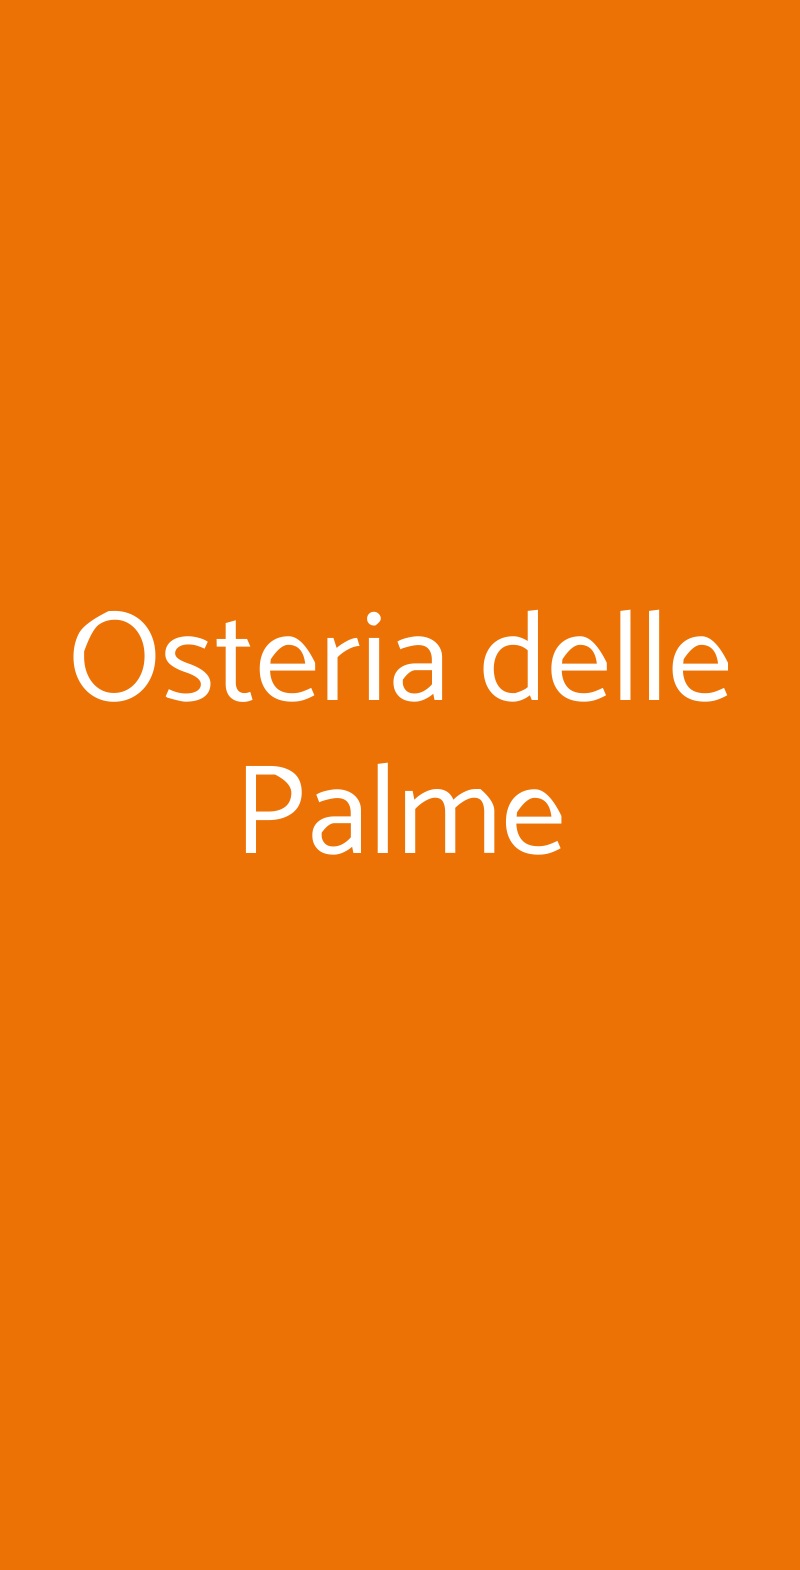 Osteria delle Palme Roma menù 1 pagina